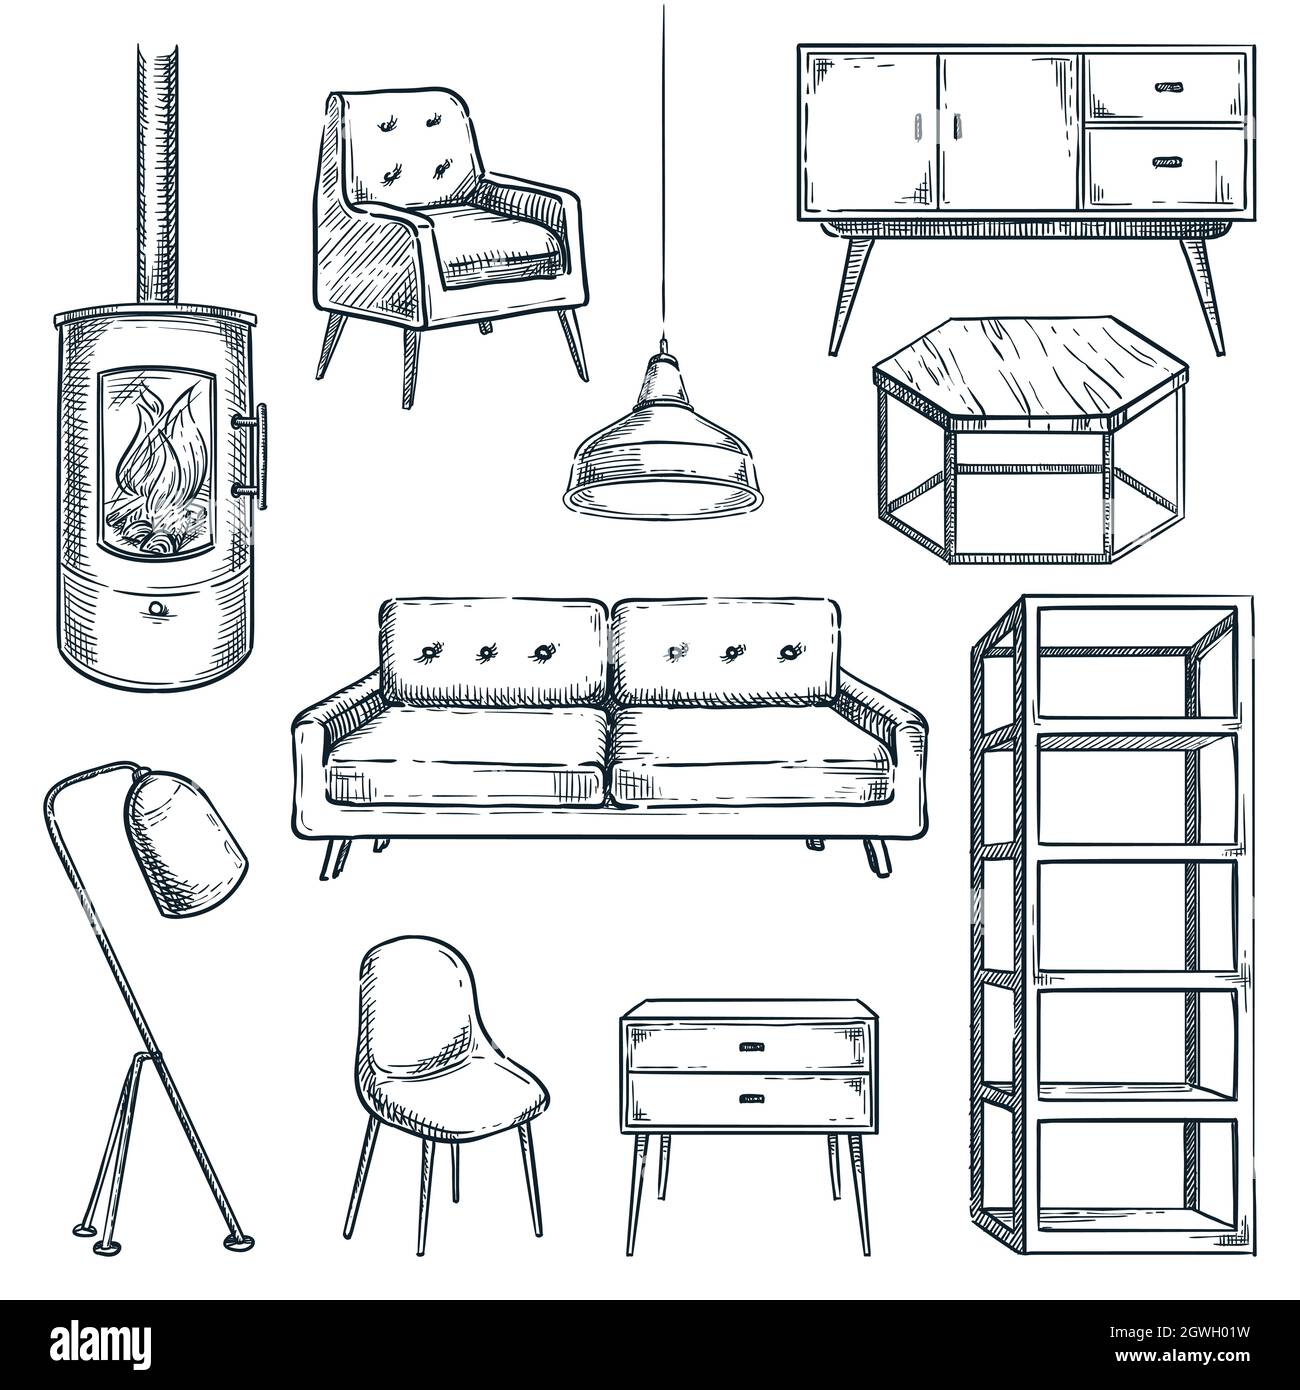 Croquis dessiné à la main fauteuil Banque d'images vectorielles - Page 3 -  Alamy